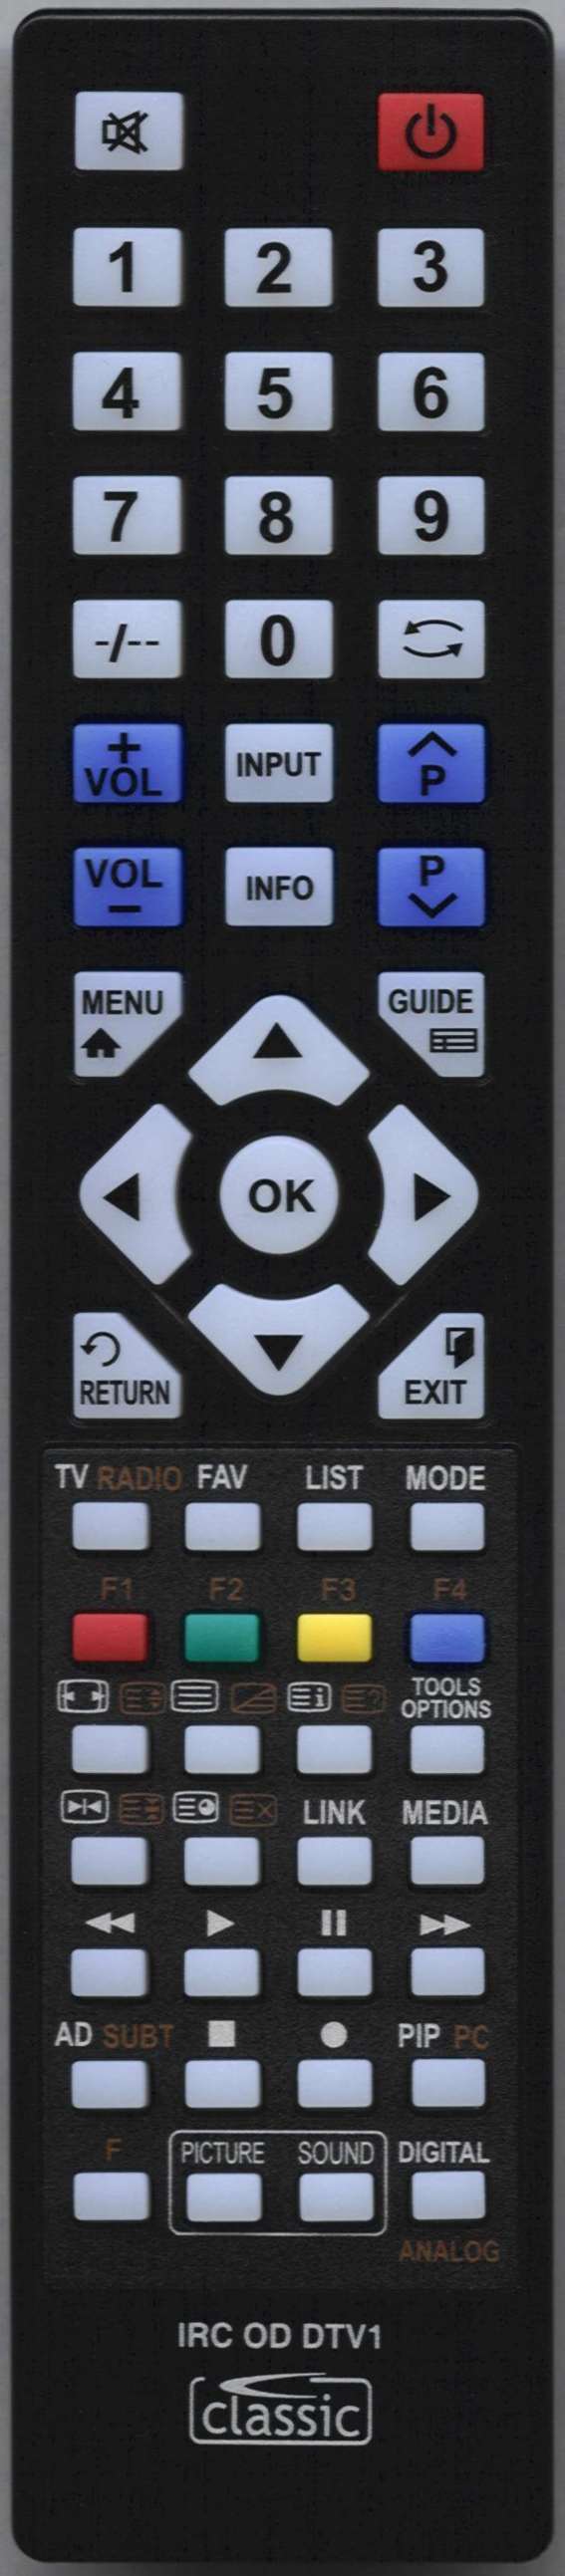 LUXOR 10053016 Remote Control Alternative